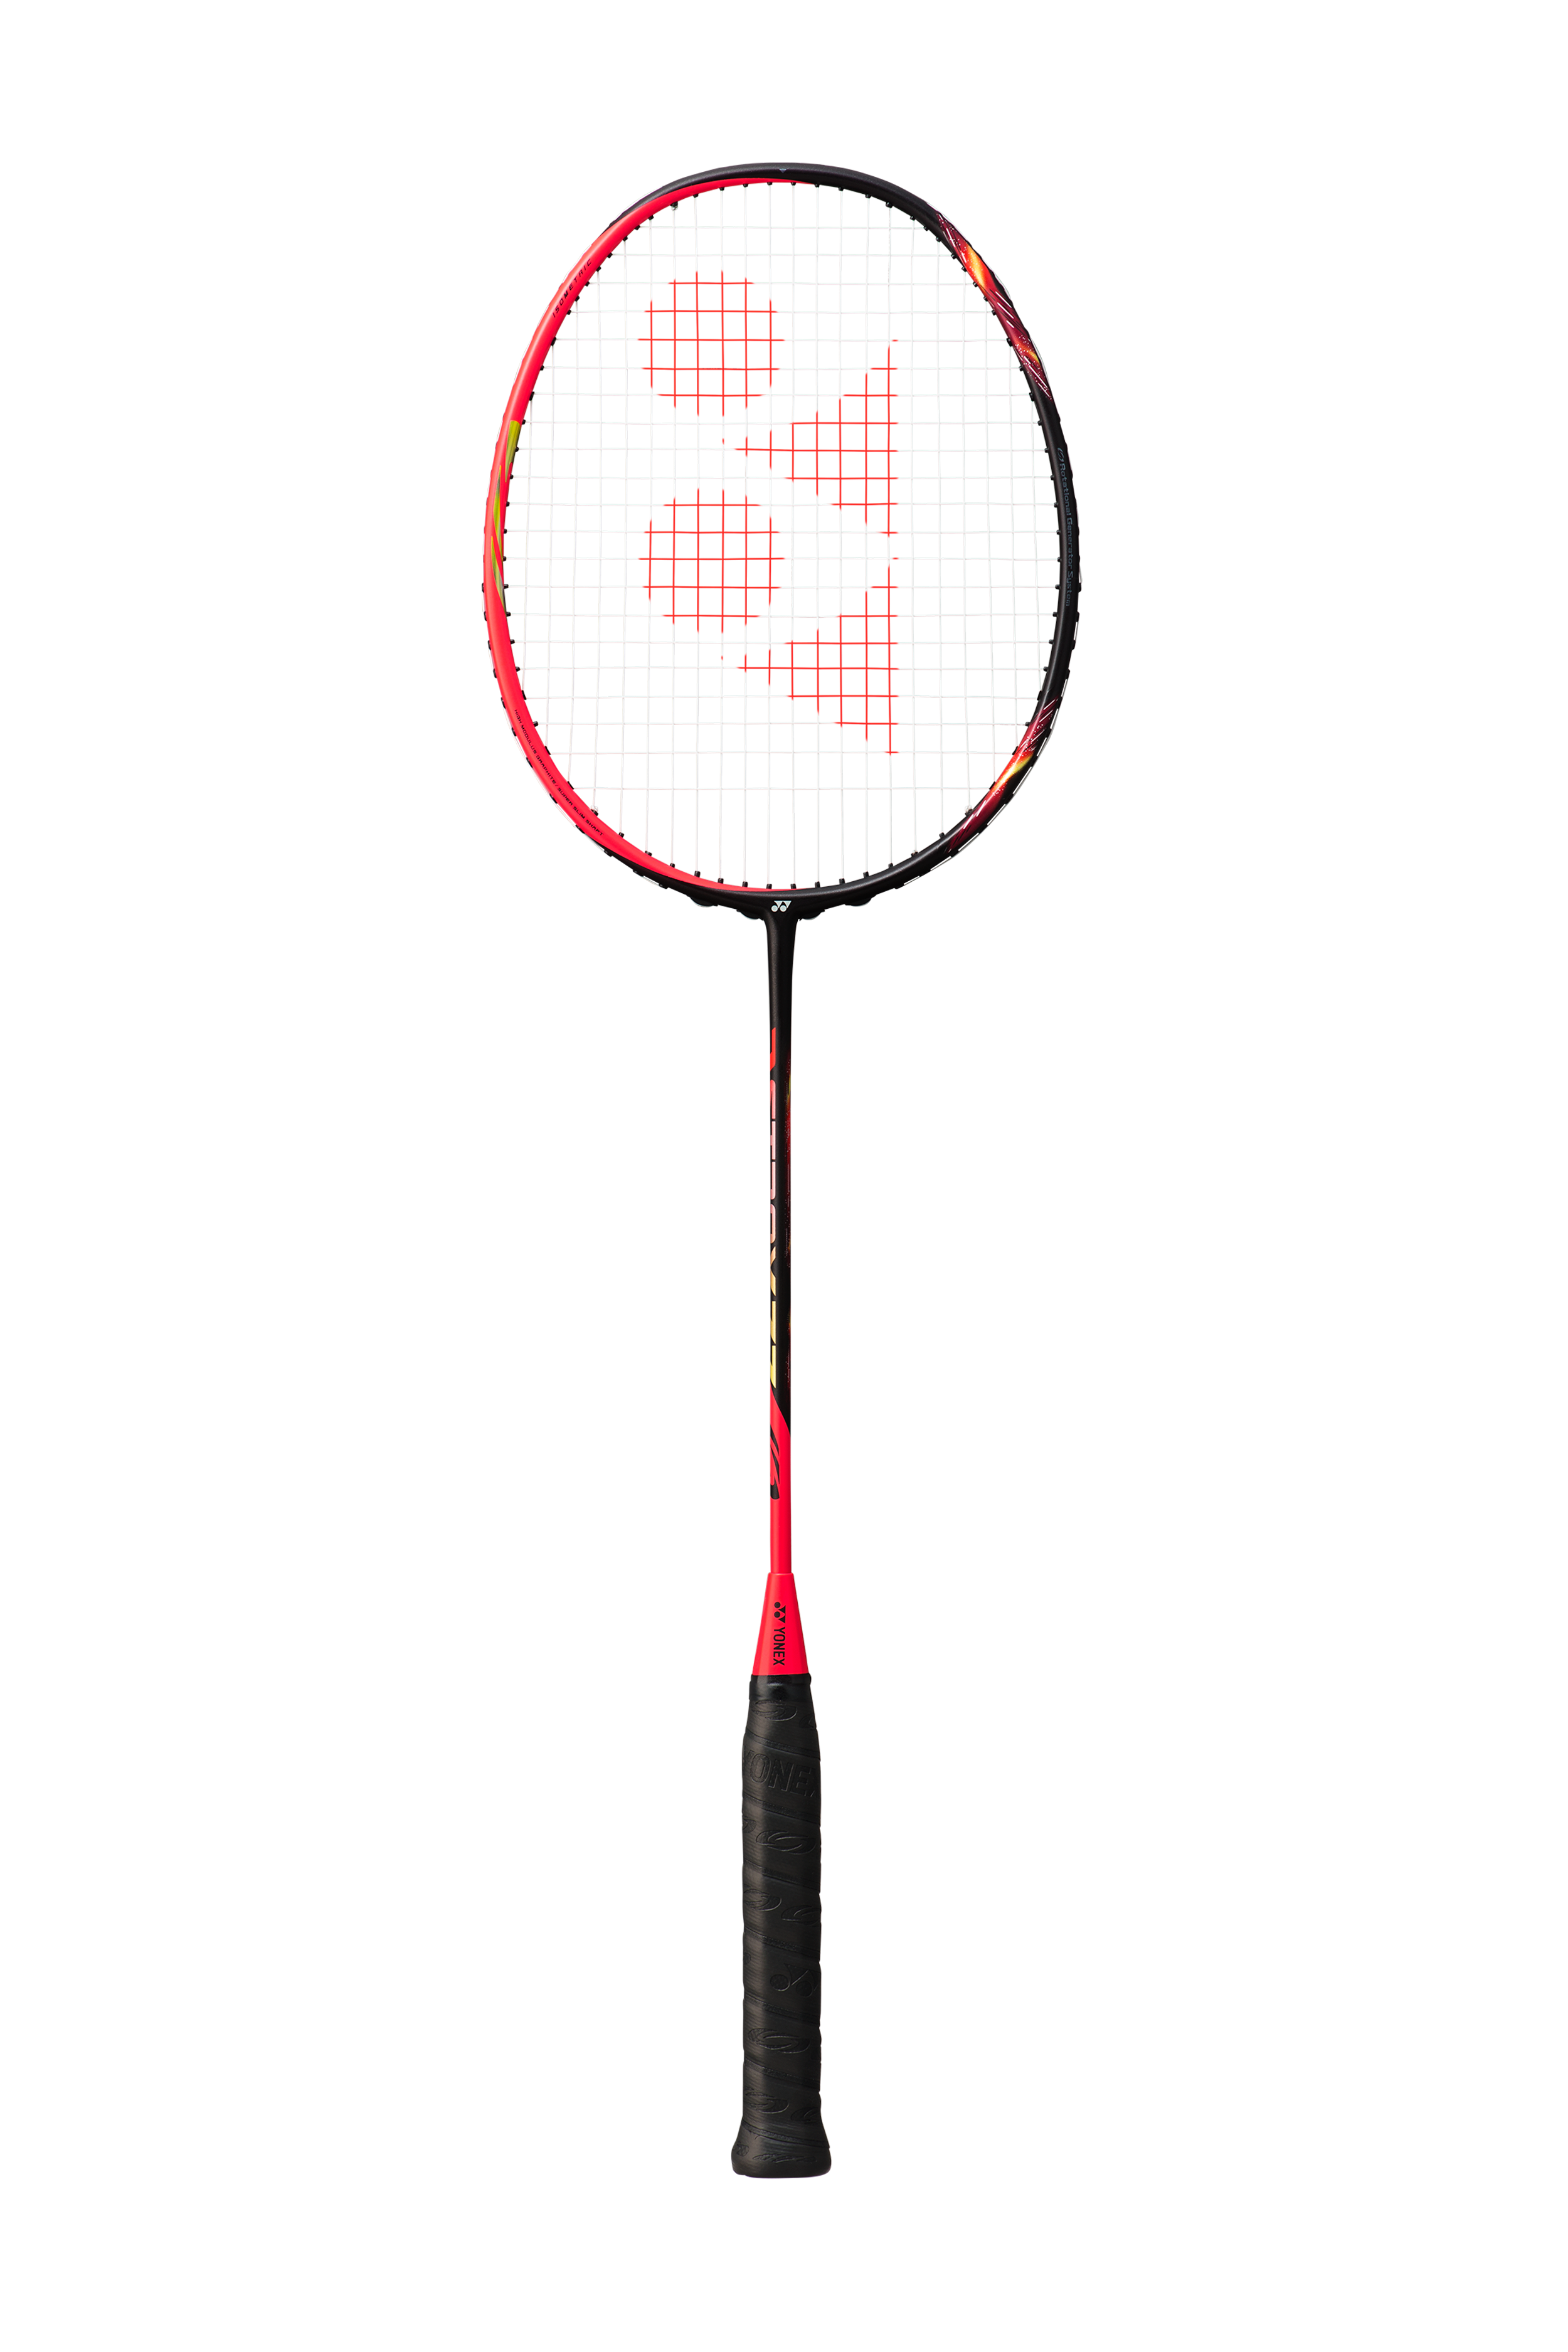 YONEX ASTROX 77 BADMINTON RACKET (SHINE RED) Oregon Badminton Academy